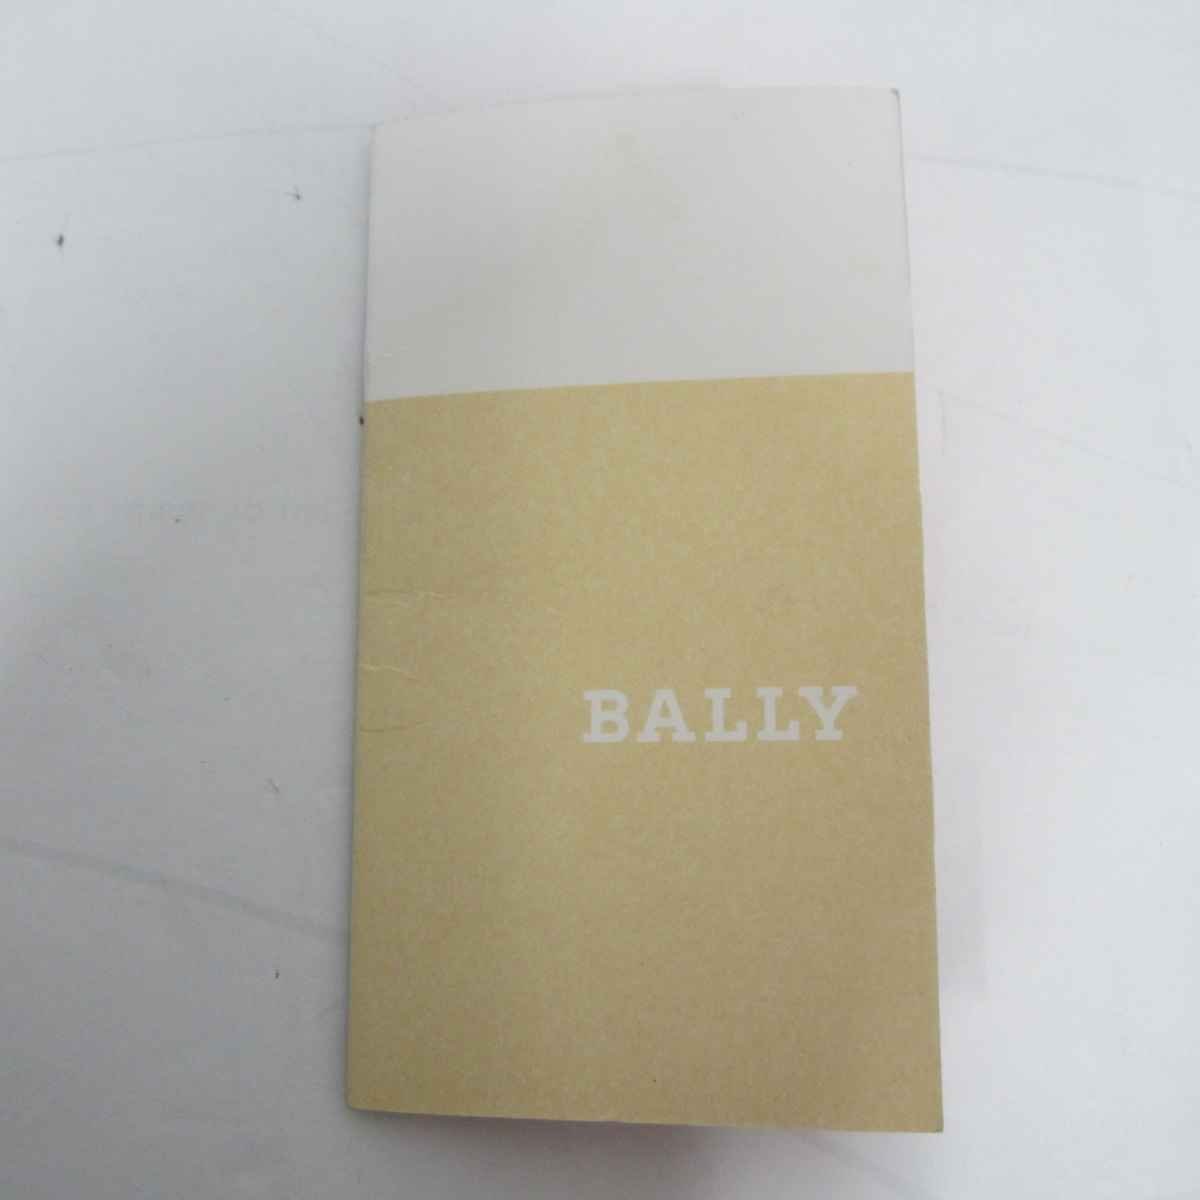 BALLY сумка "Boston bag" < сумка > Bally мужской бренд парусина × кожа оттенок бежевого дорожная сумка маленький путешествие застежка-молния открытие и закрытие карман есть 